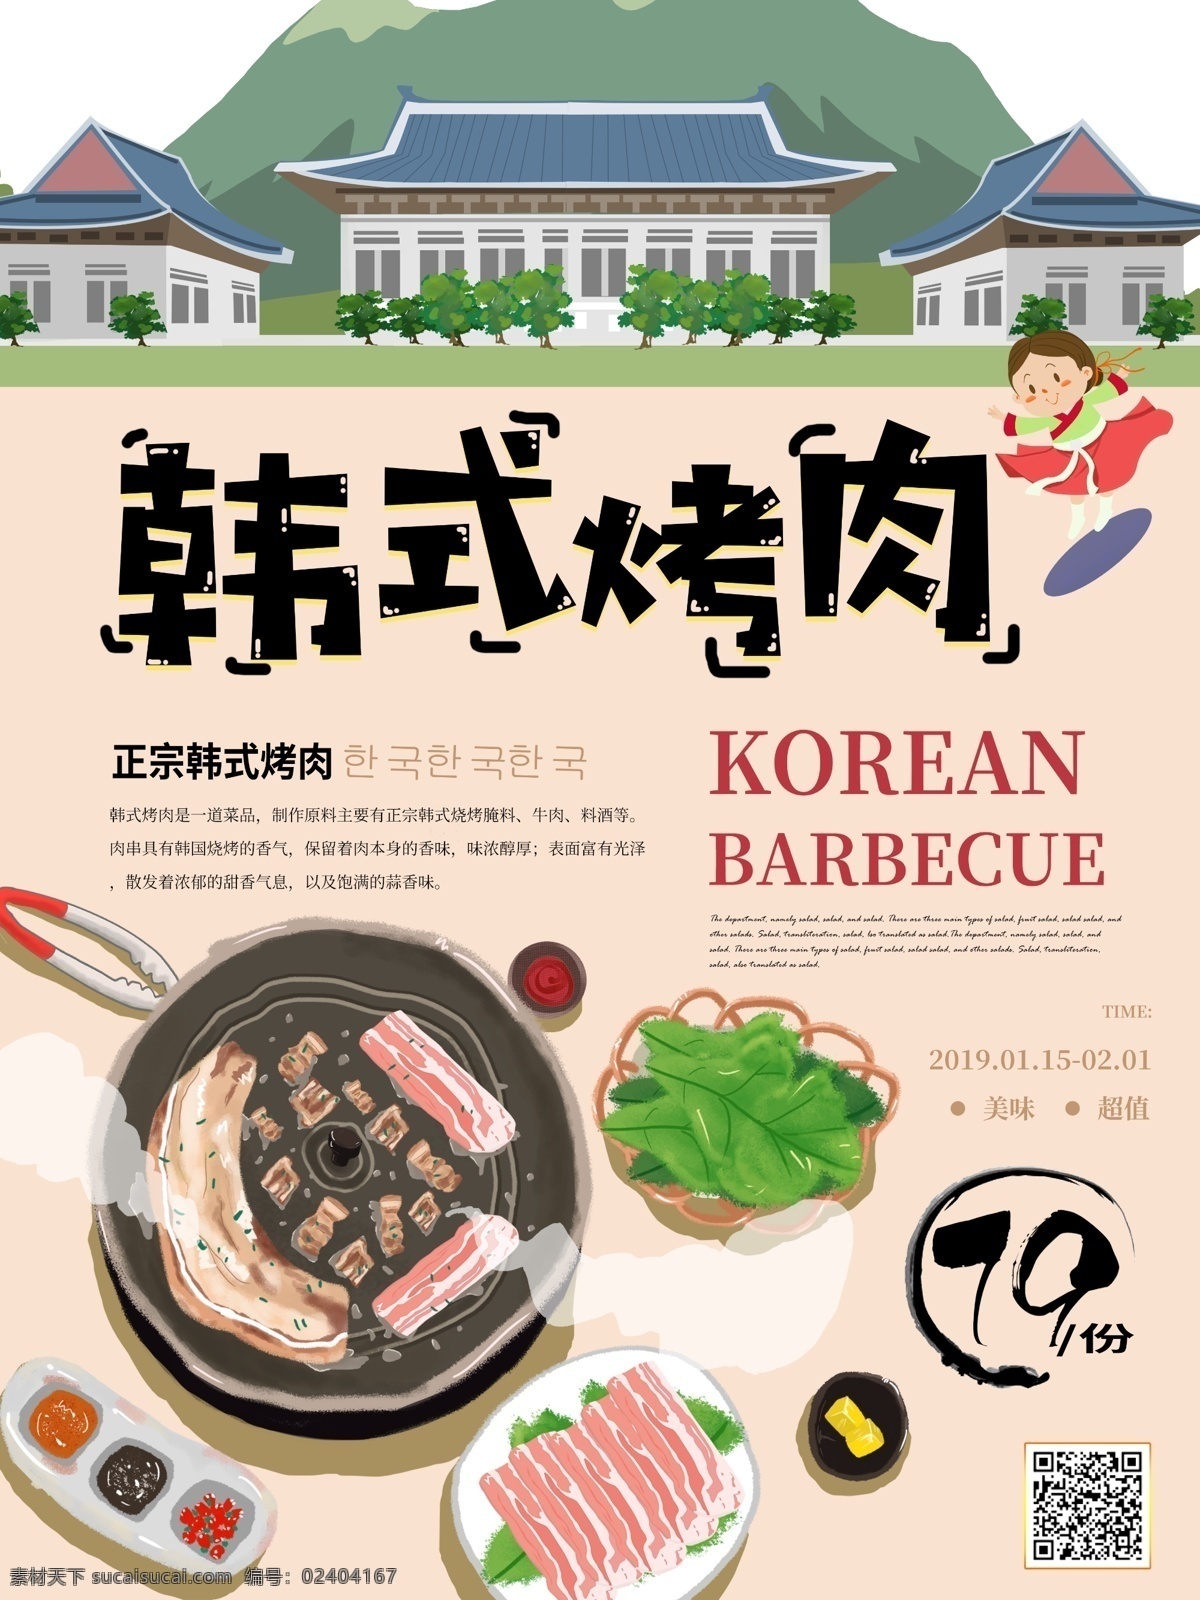 简约 韩式 烤肉 插 画风 美食 海报 韩国 美食海报 韩式烤肉 肉 插画风